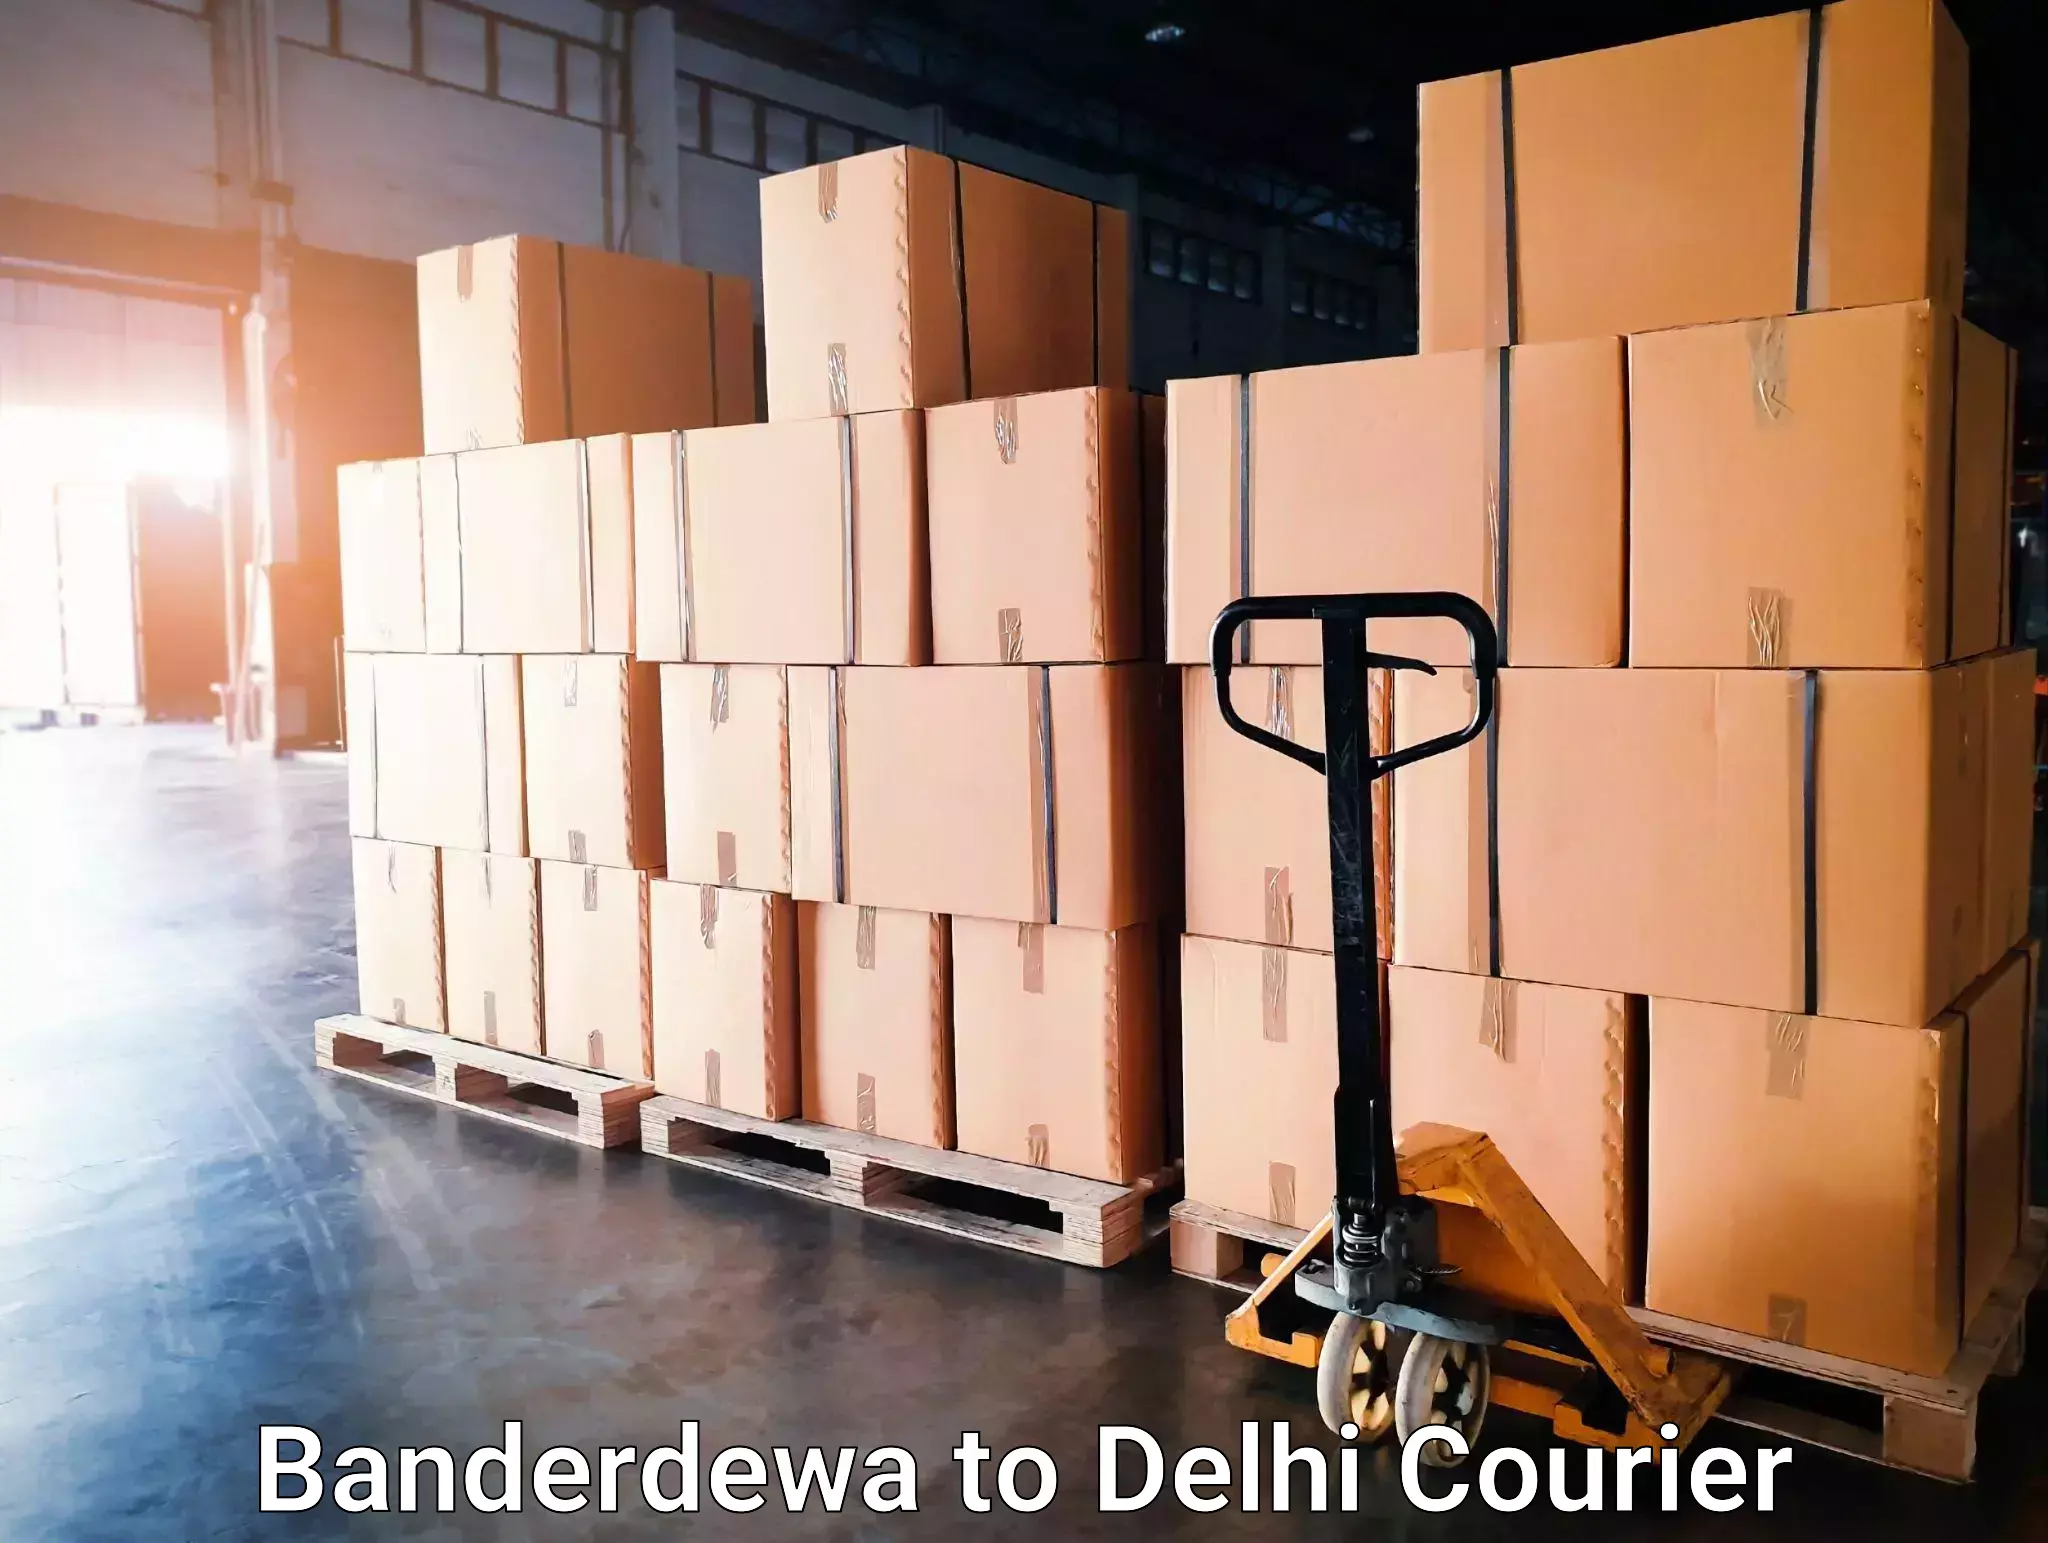 Efficient order fulfillment Banderdewa to East Delhi